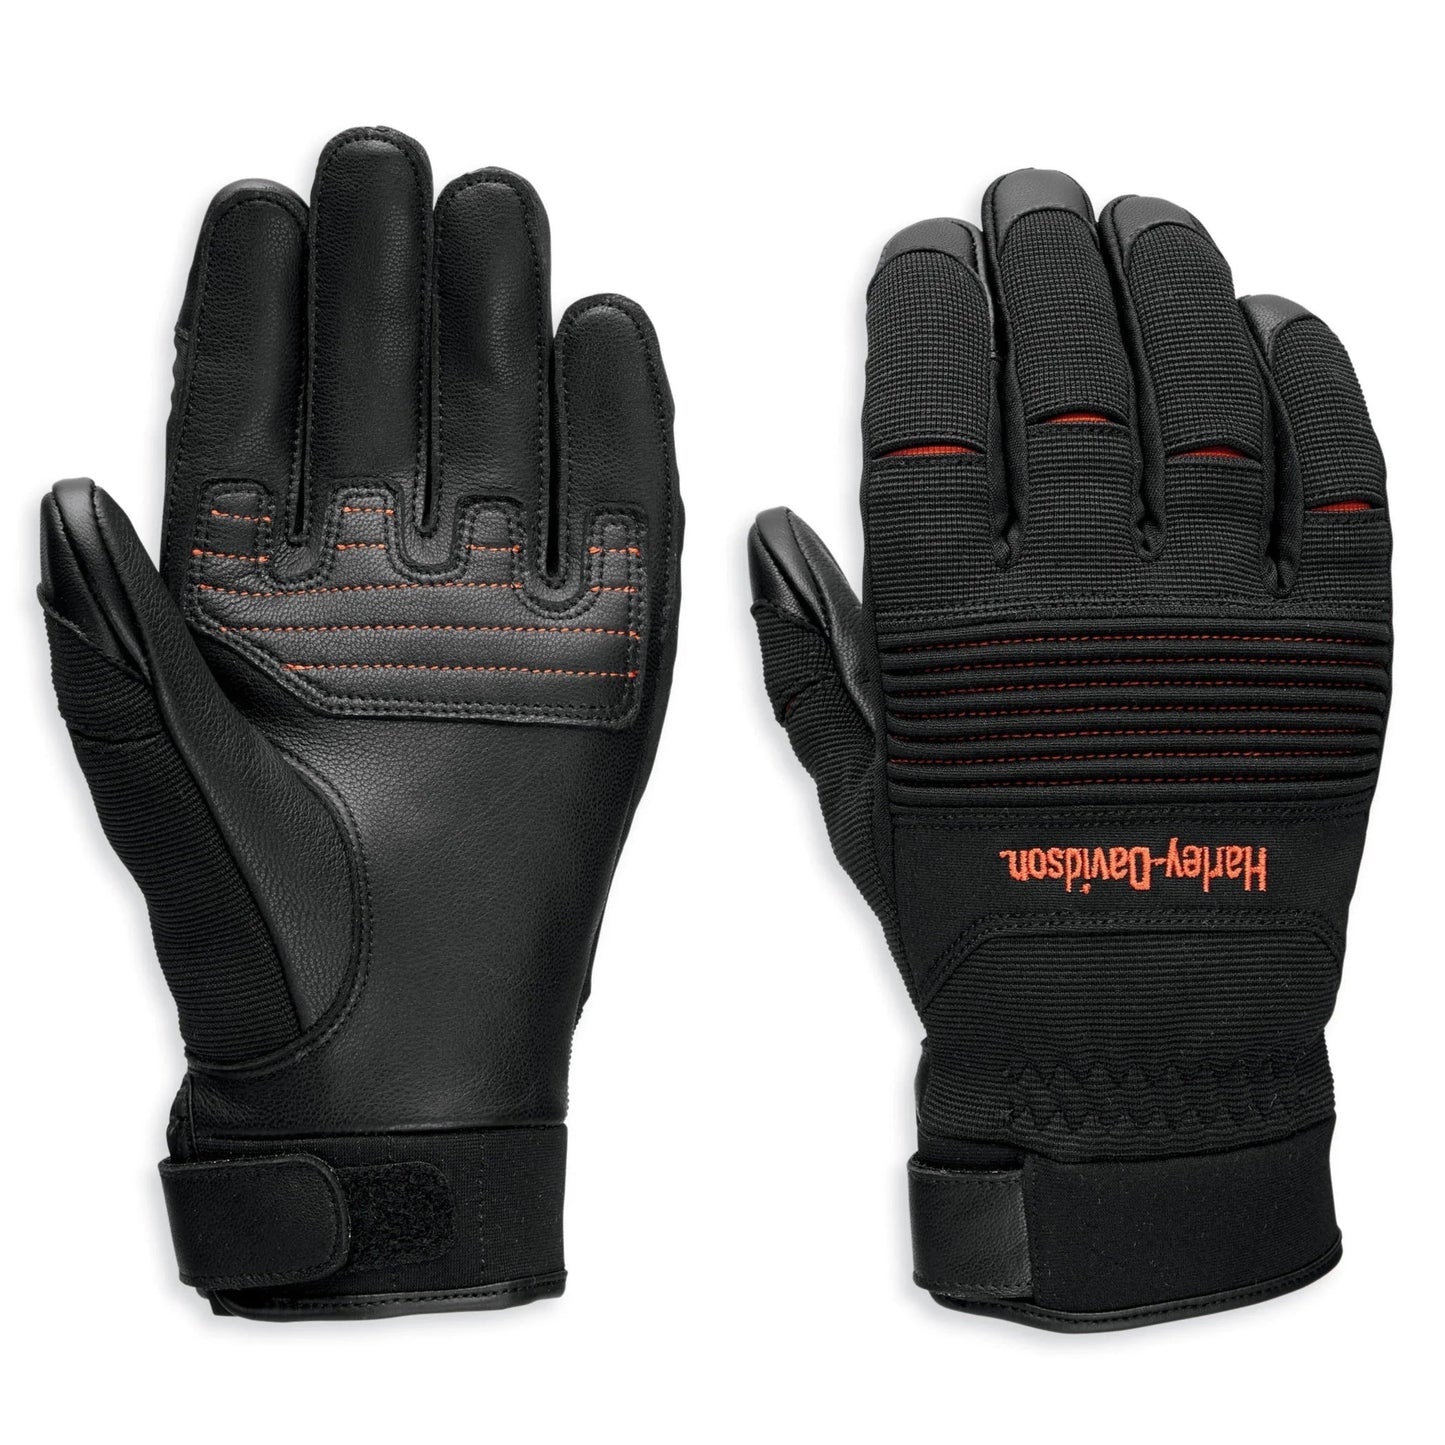 Harley-Davidson Men's Ovation Mixed Media Gloves, 97136-23VM